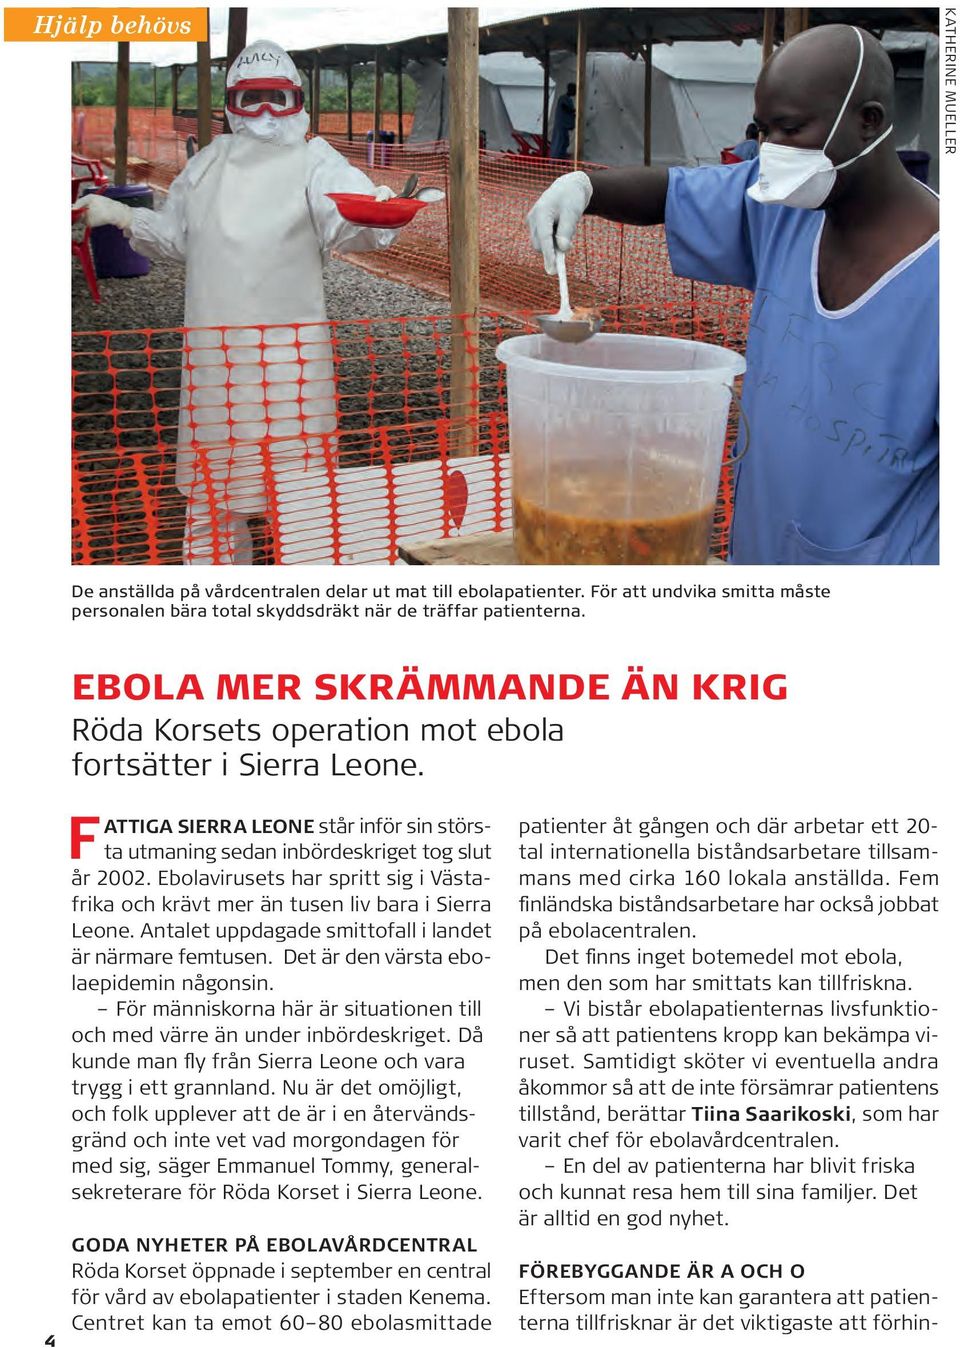 Ebolavirusets har spritt sig i Västafrika och krävt mer än tusen liv bara i Sierra Leone. Antalet uppdagade smittofall i landet är närmare femtusen. Det är den värsta ebolaepidemin någonsin.